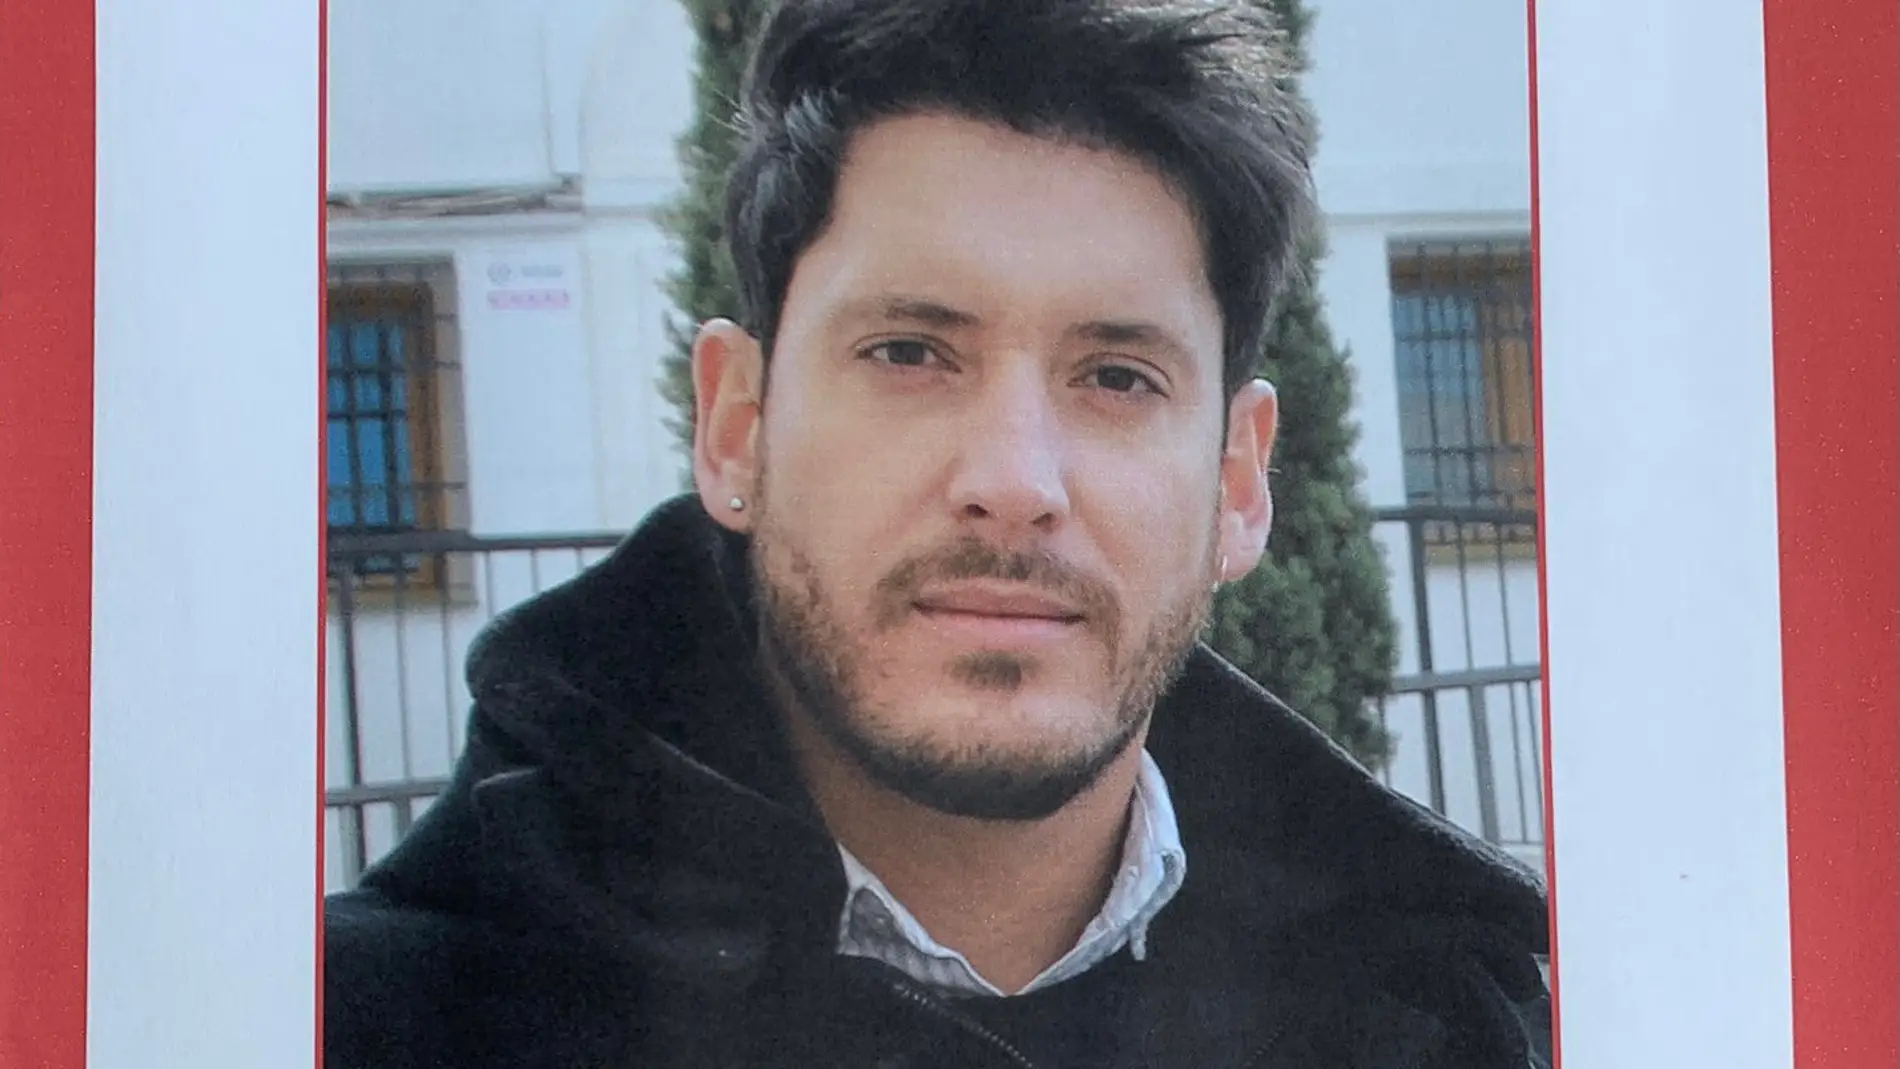 Cartel de búsqueda tras la desaparición de Marcos Durá Cano en Formigal